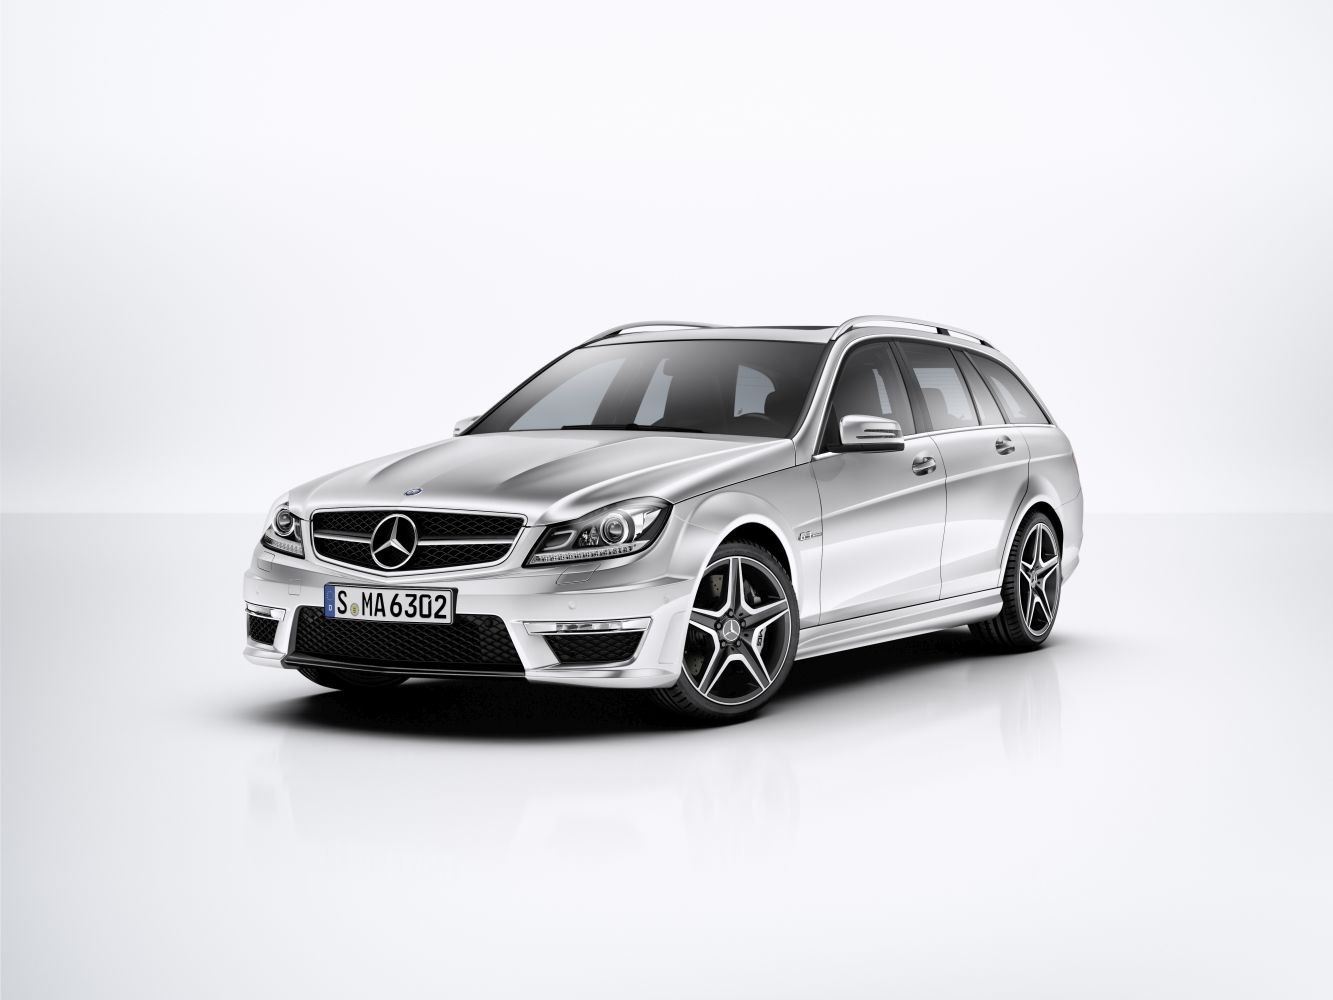 2013 Mercedes-Benz C-Klasse T-modell (S204, facelift 2011) C 220 CDI  BlueEFFICIENCY Edition (170 PS)